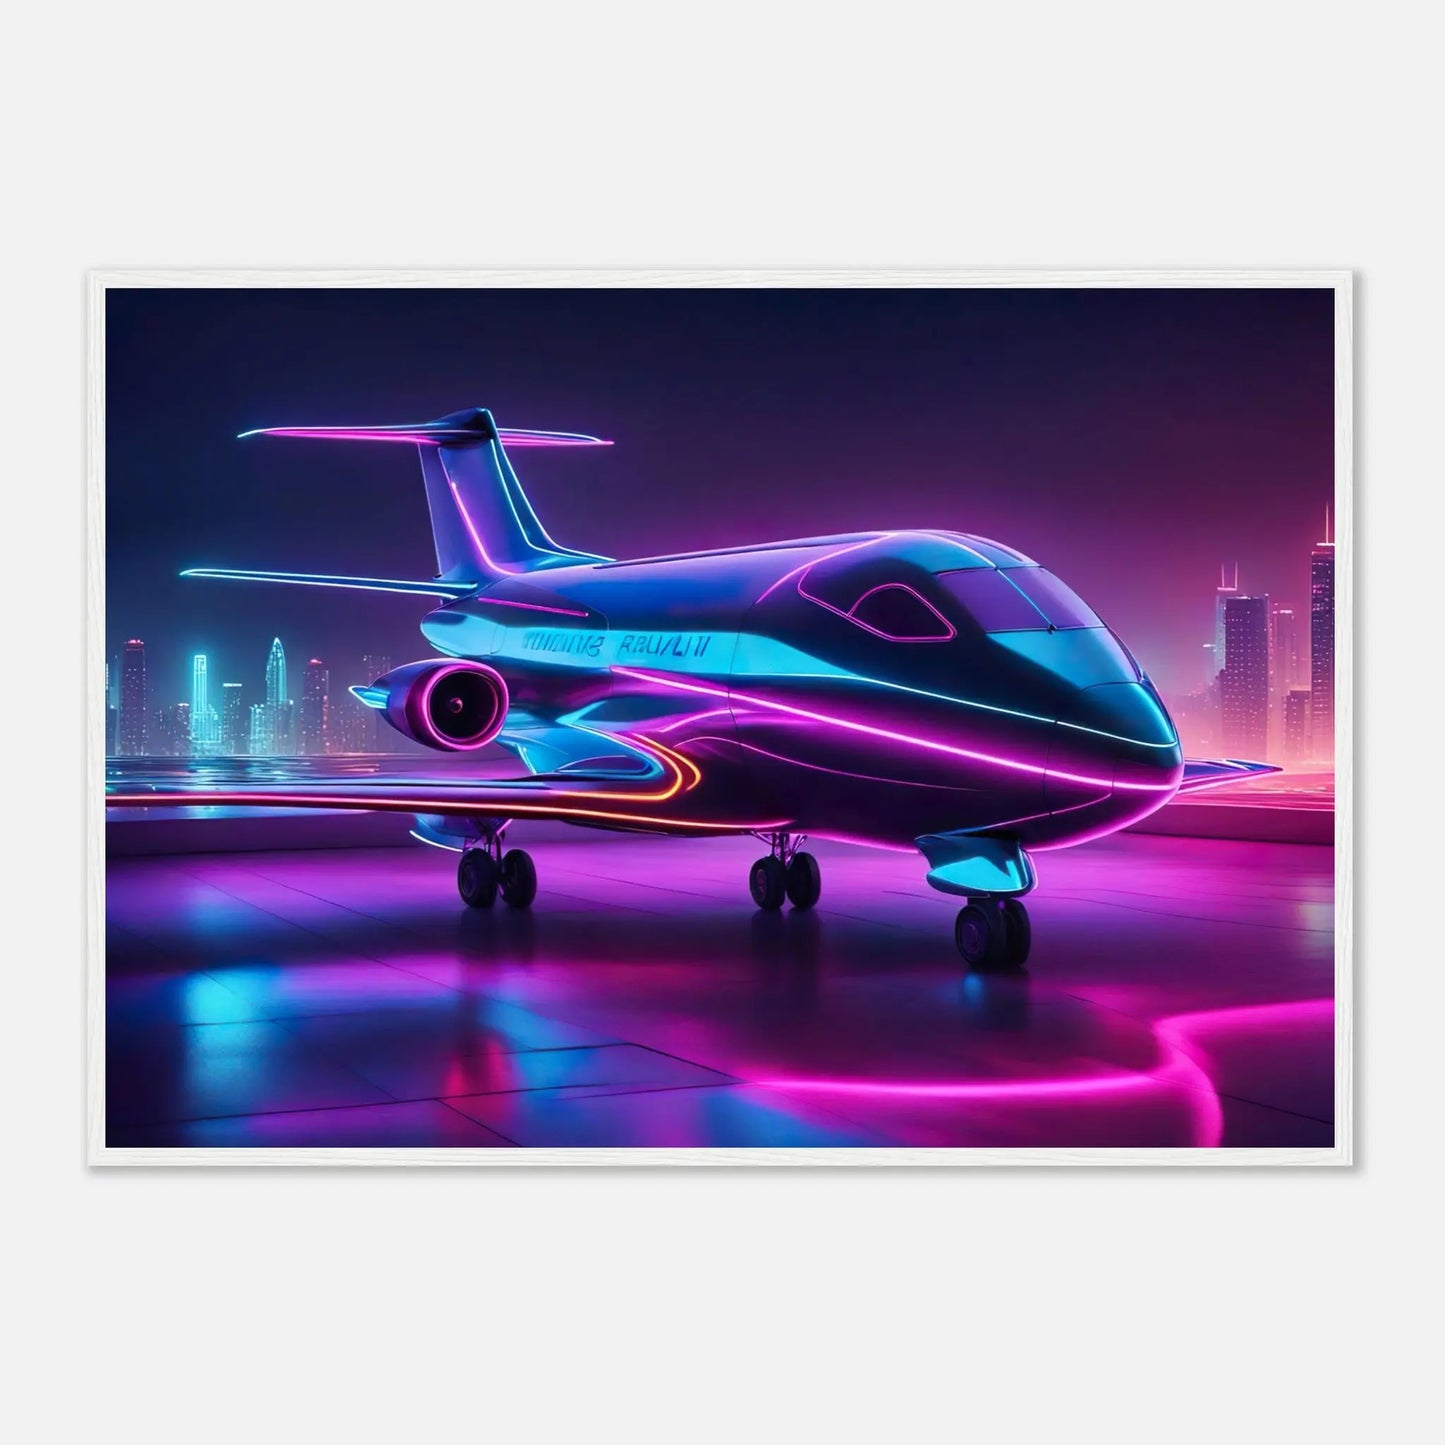 Gerahmtes Premium-Poster -Futuristisches Flugzeug- Neon Stil, KI-Kunst - RolConArt, Neon, 70x100-cm-28x40-Weißer-Rahmen